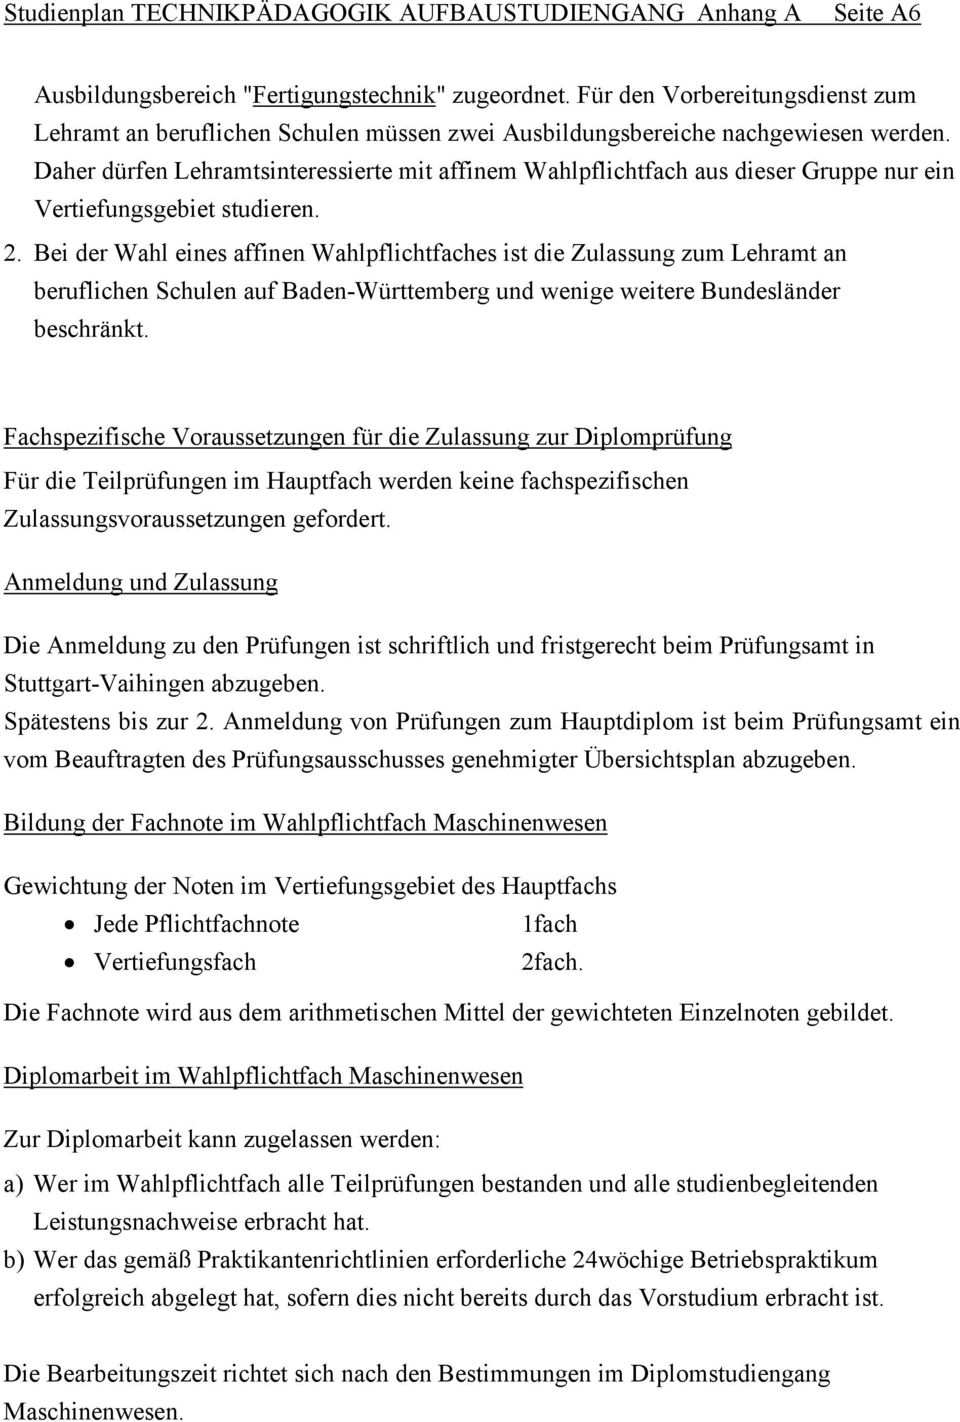 Bei der Wahl eines affinen Wahlpflichtfaches ist die Zulassung zum Lehramt an beruflichen Schulen auf Baden-Württemberg und wenige weitere Bundesländer beschränkt.